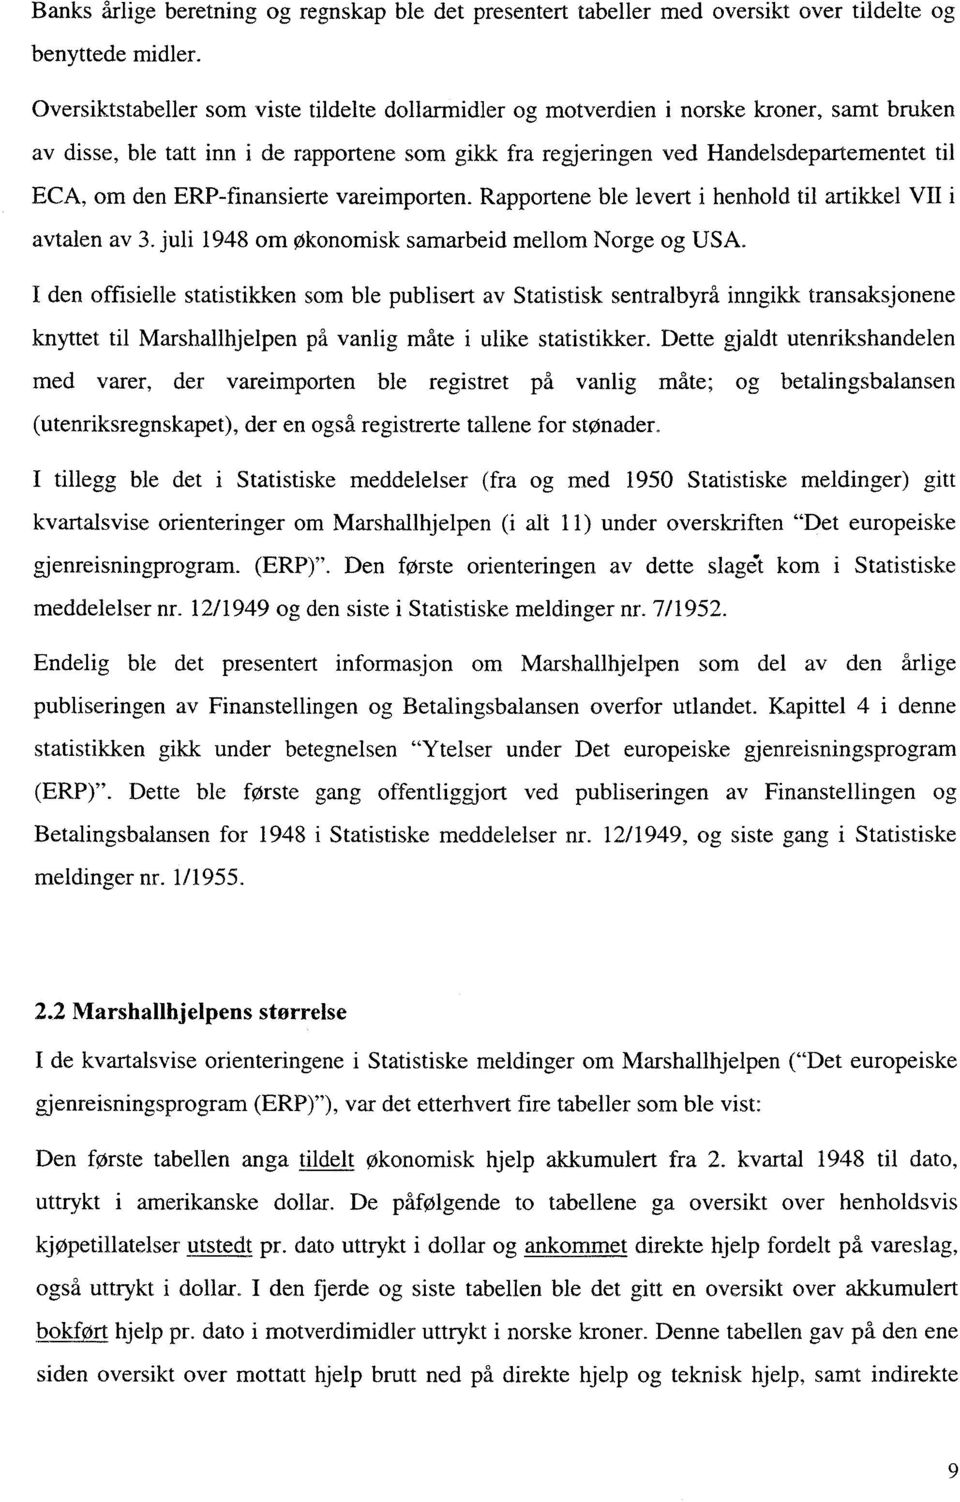 ERP-finansierte vareimporten. Rapportene ble levert i henhold til artikkel VII i avtalen av 3. juli 1948 om Økonomisk samarbeid mellom Norge og USA.